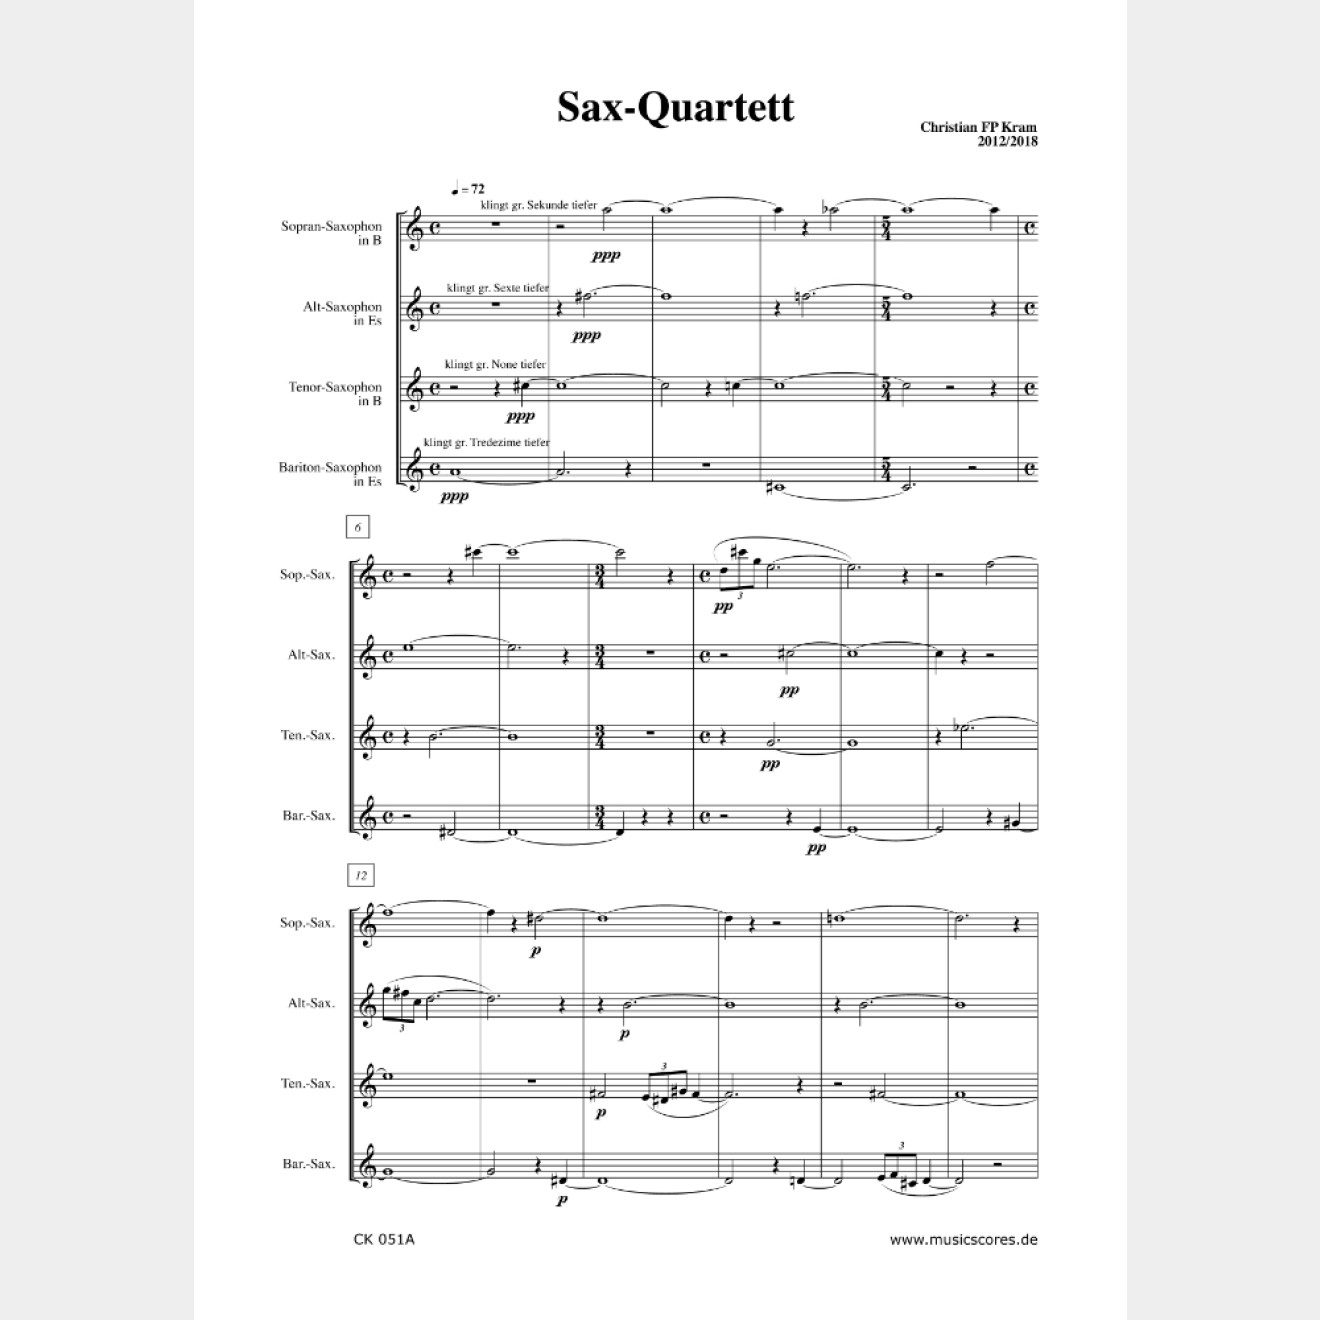 Sax-Quartet (score and parts)